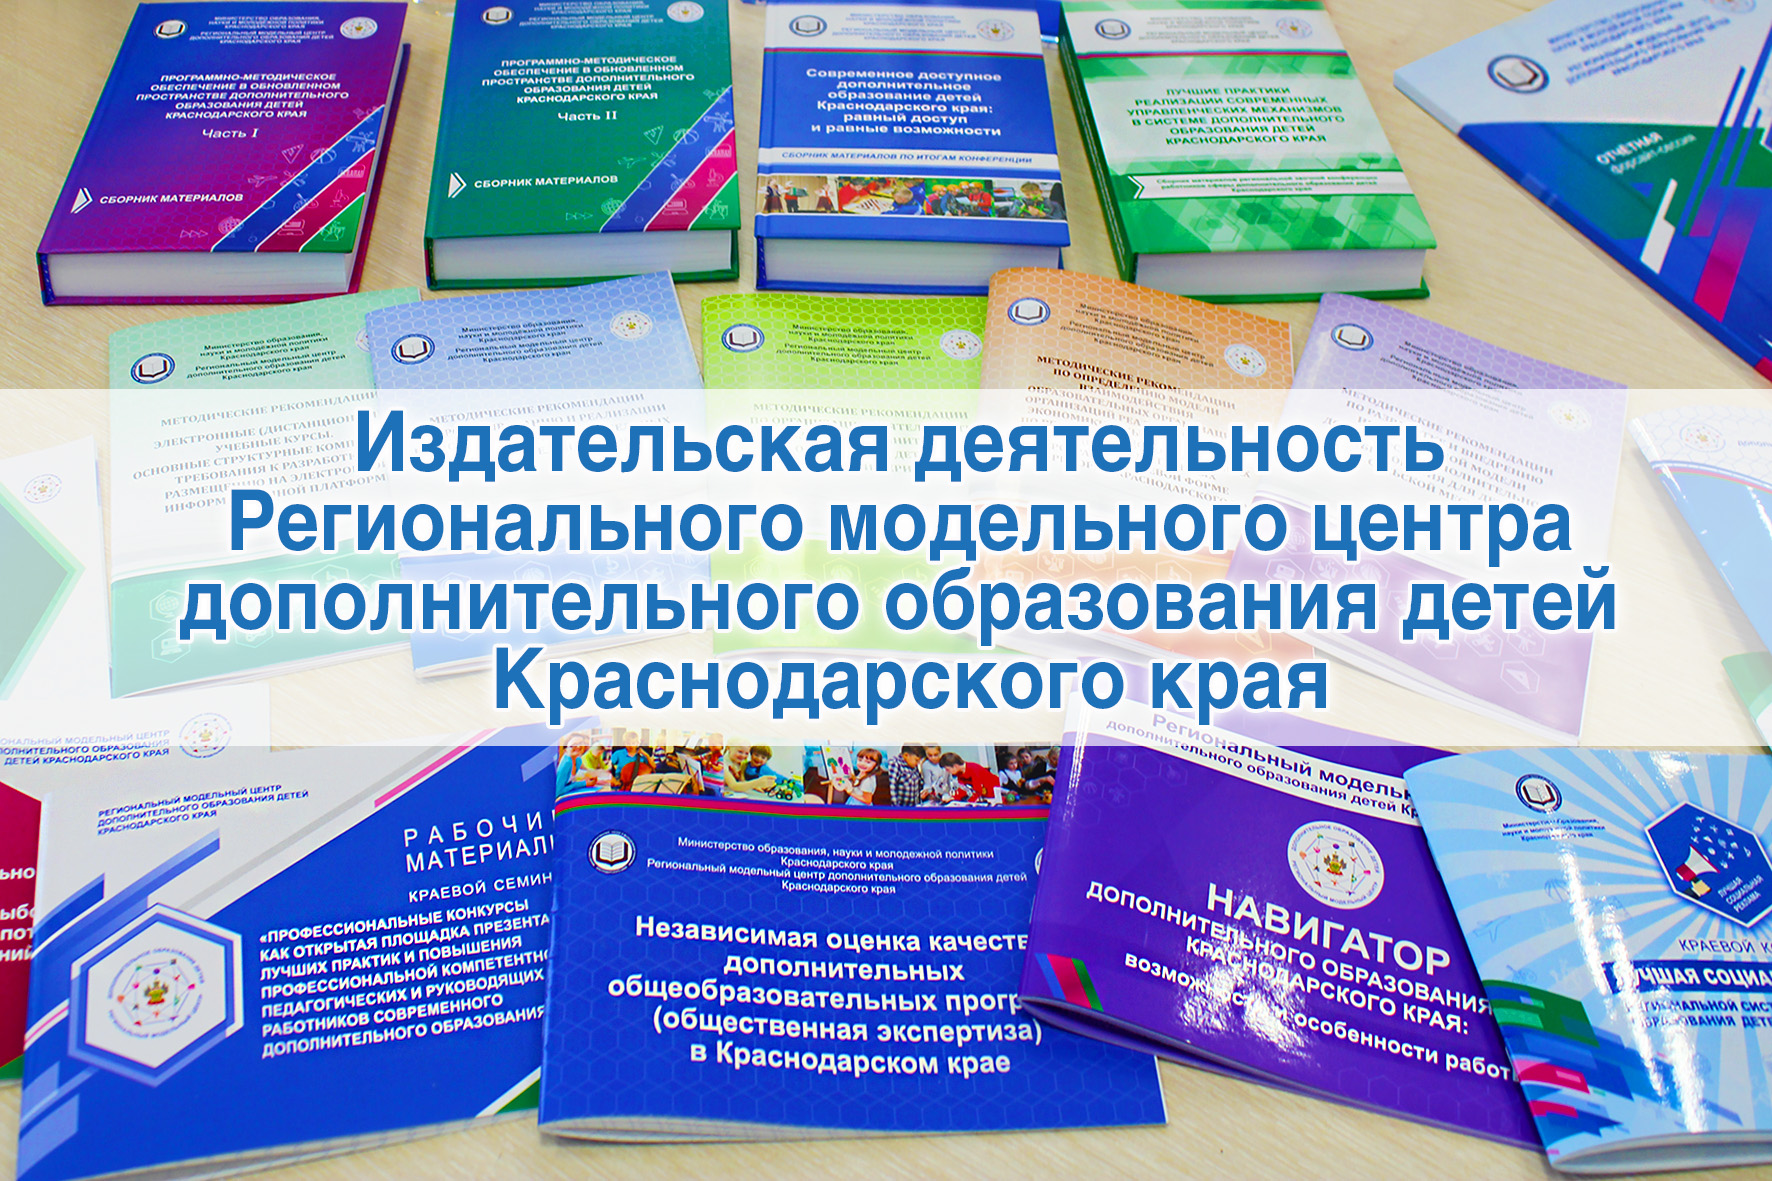 Сайт управления образования краснодарского края